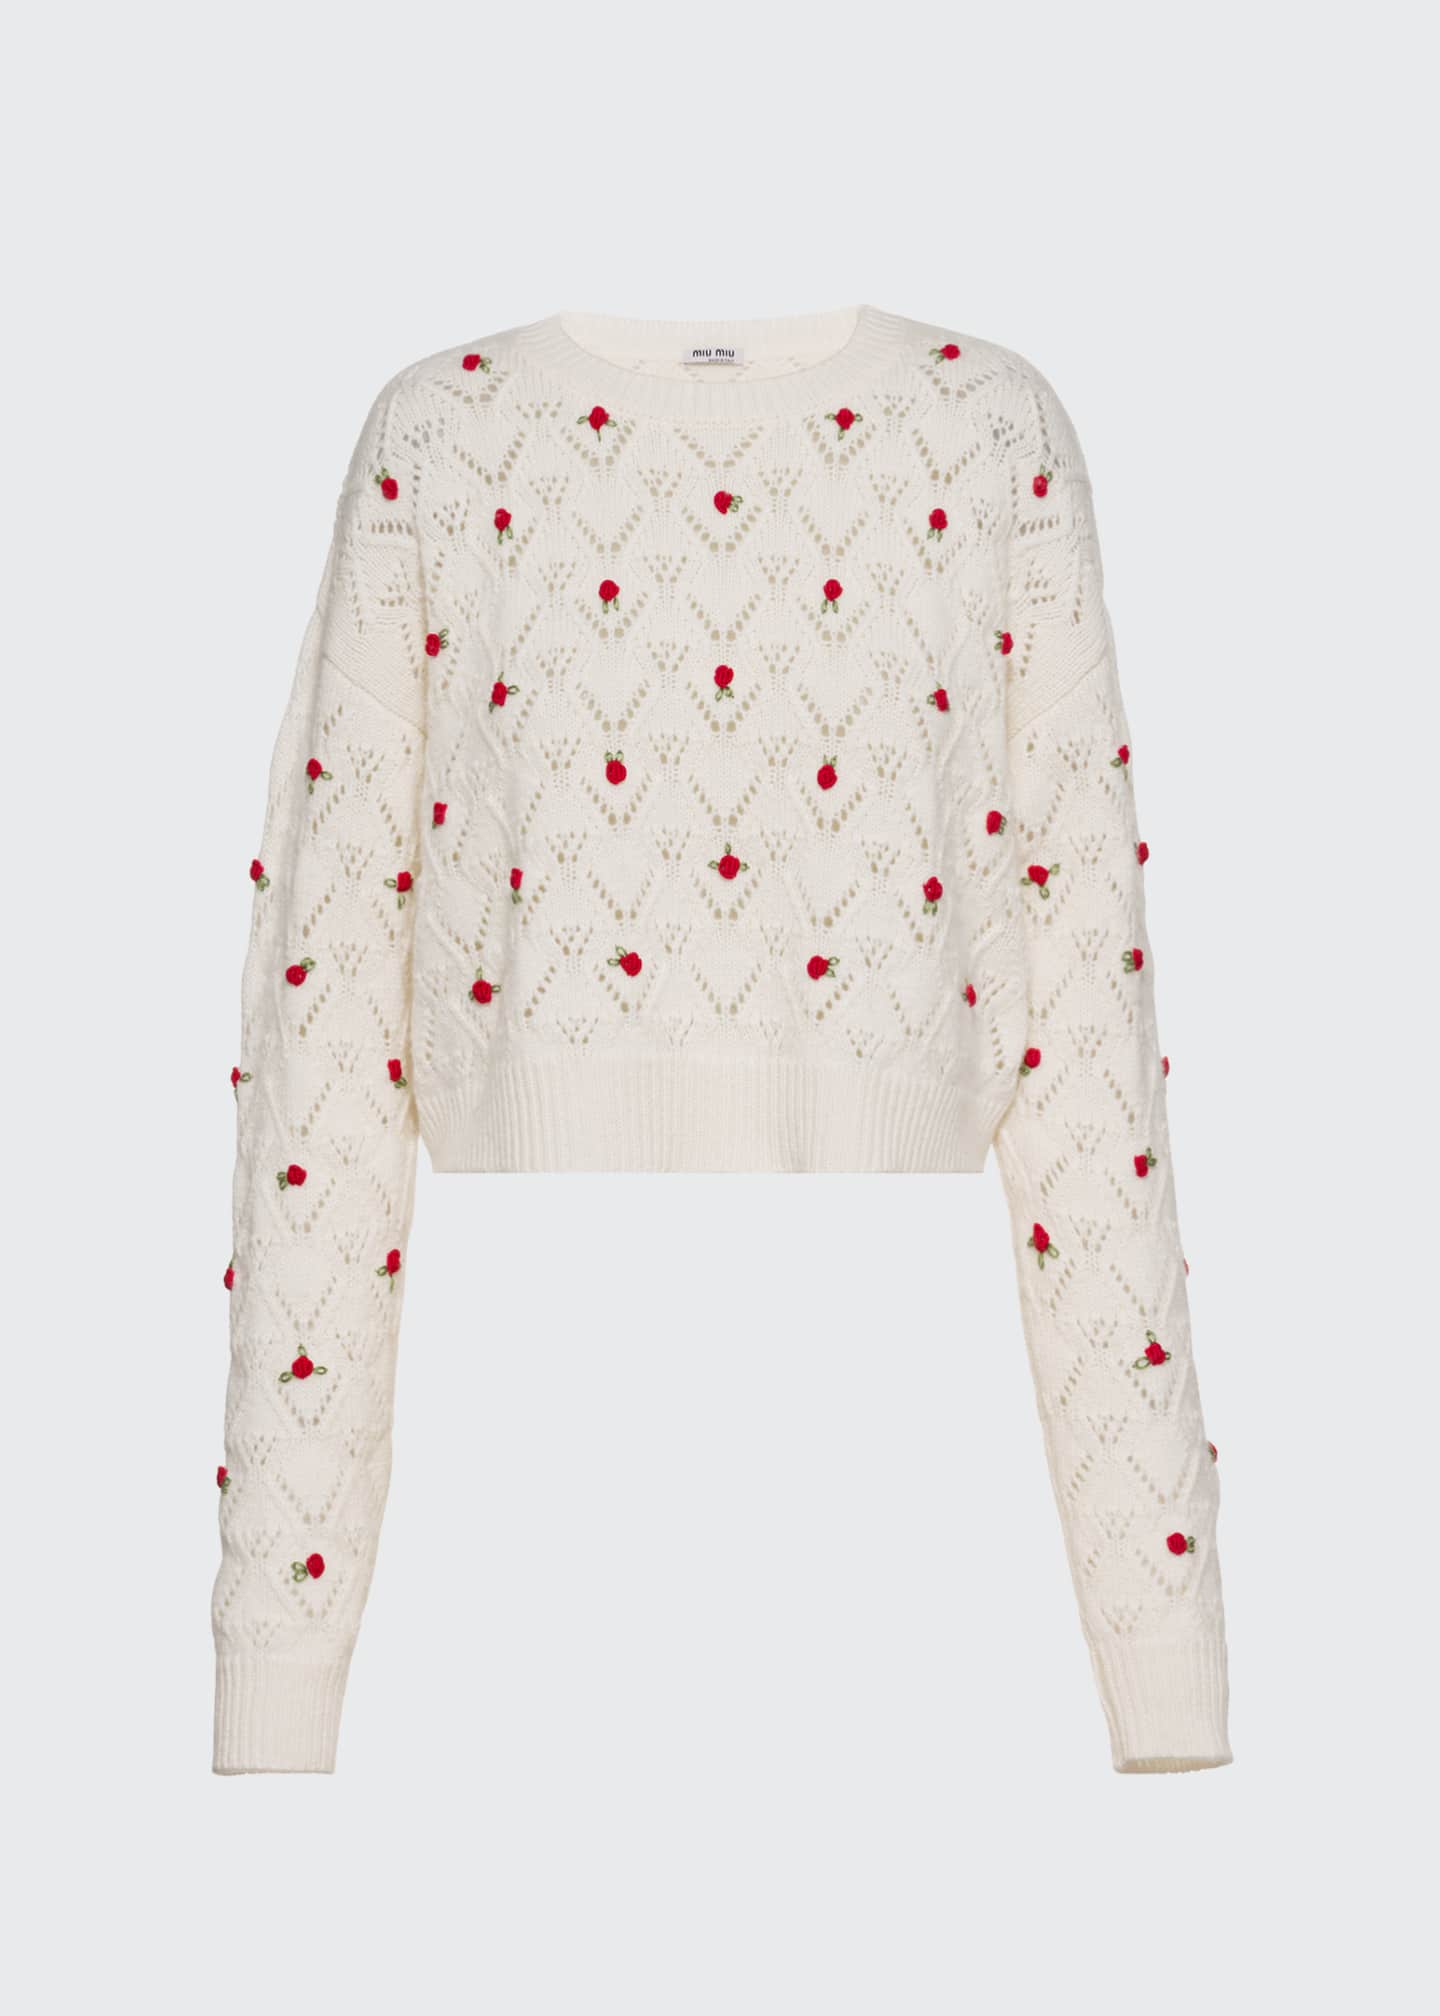 Miu Miu Rose Embroidered Cashmere Sweater - Bergdorf Goodman